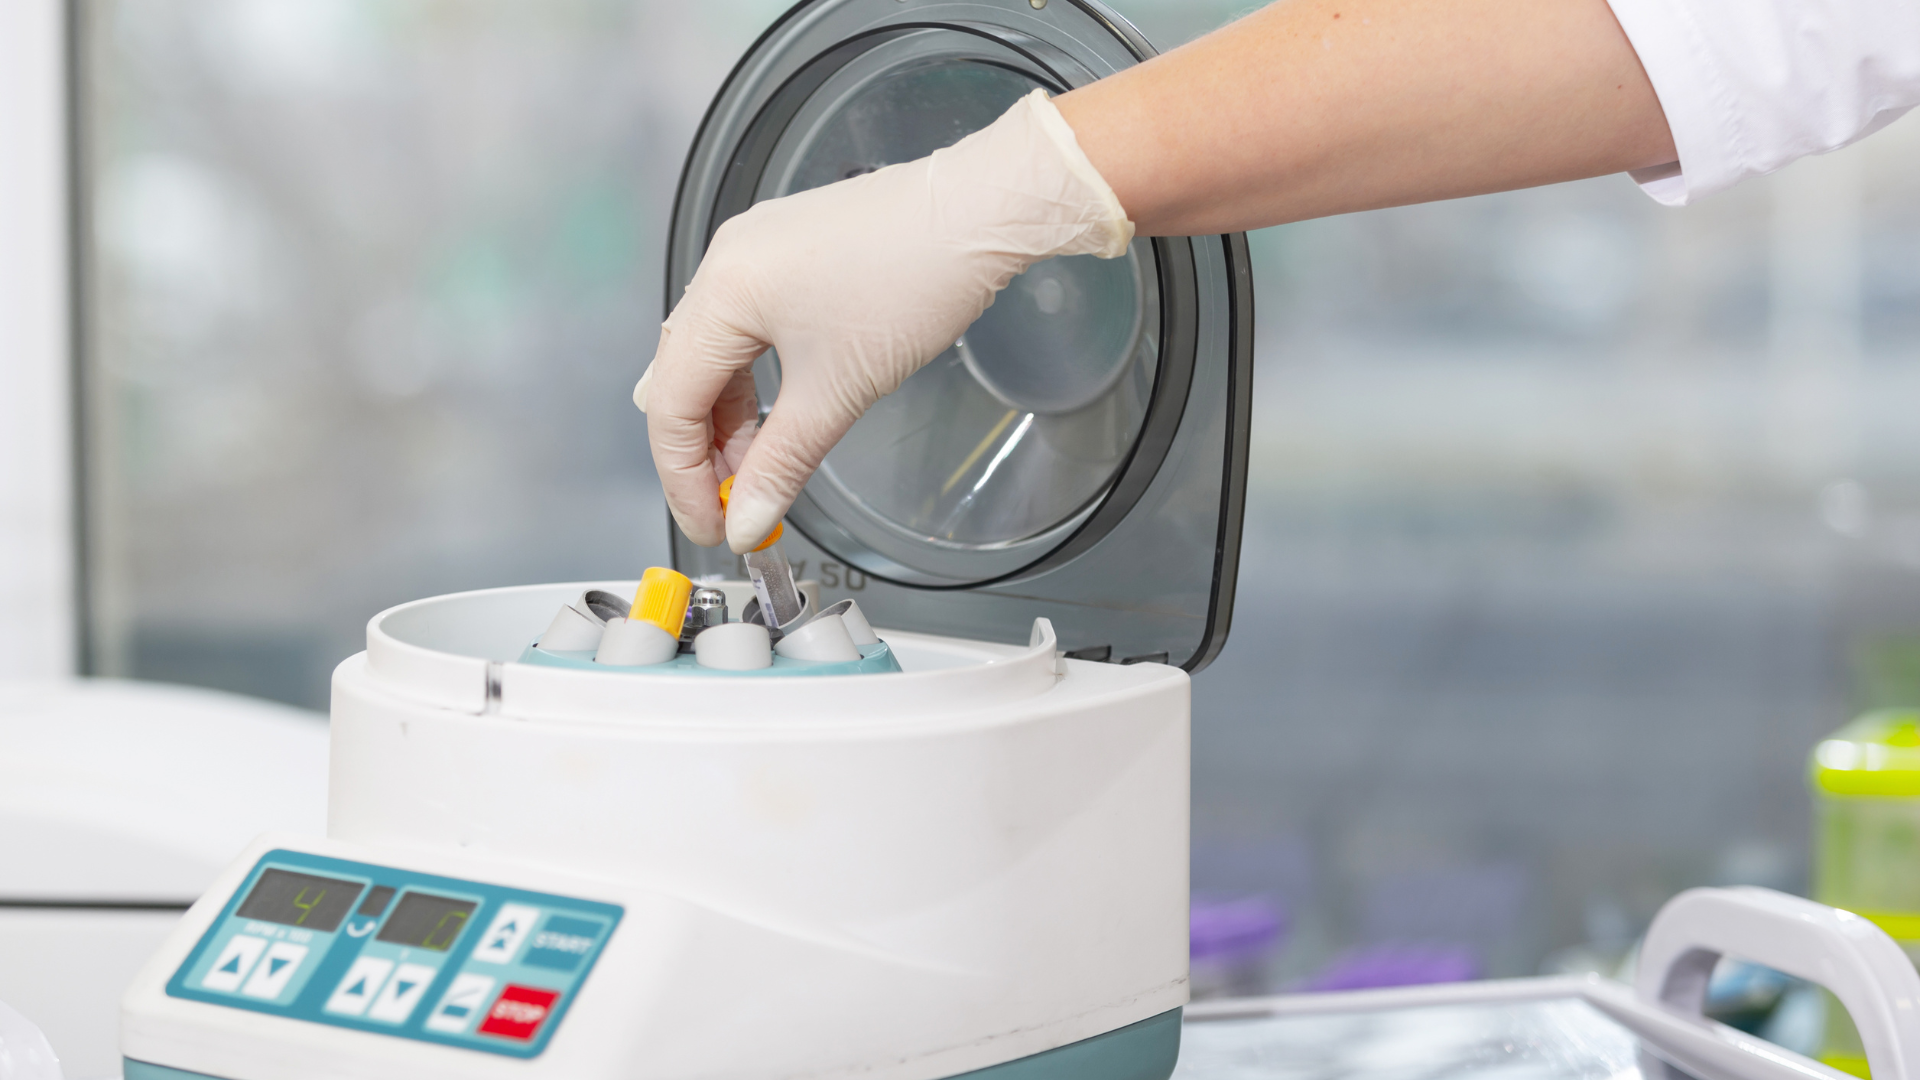 Fotografia de centrífuga em laboratório, com uma mão branca usando luva inserindo uma amostra na máquina